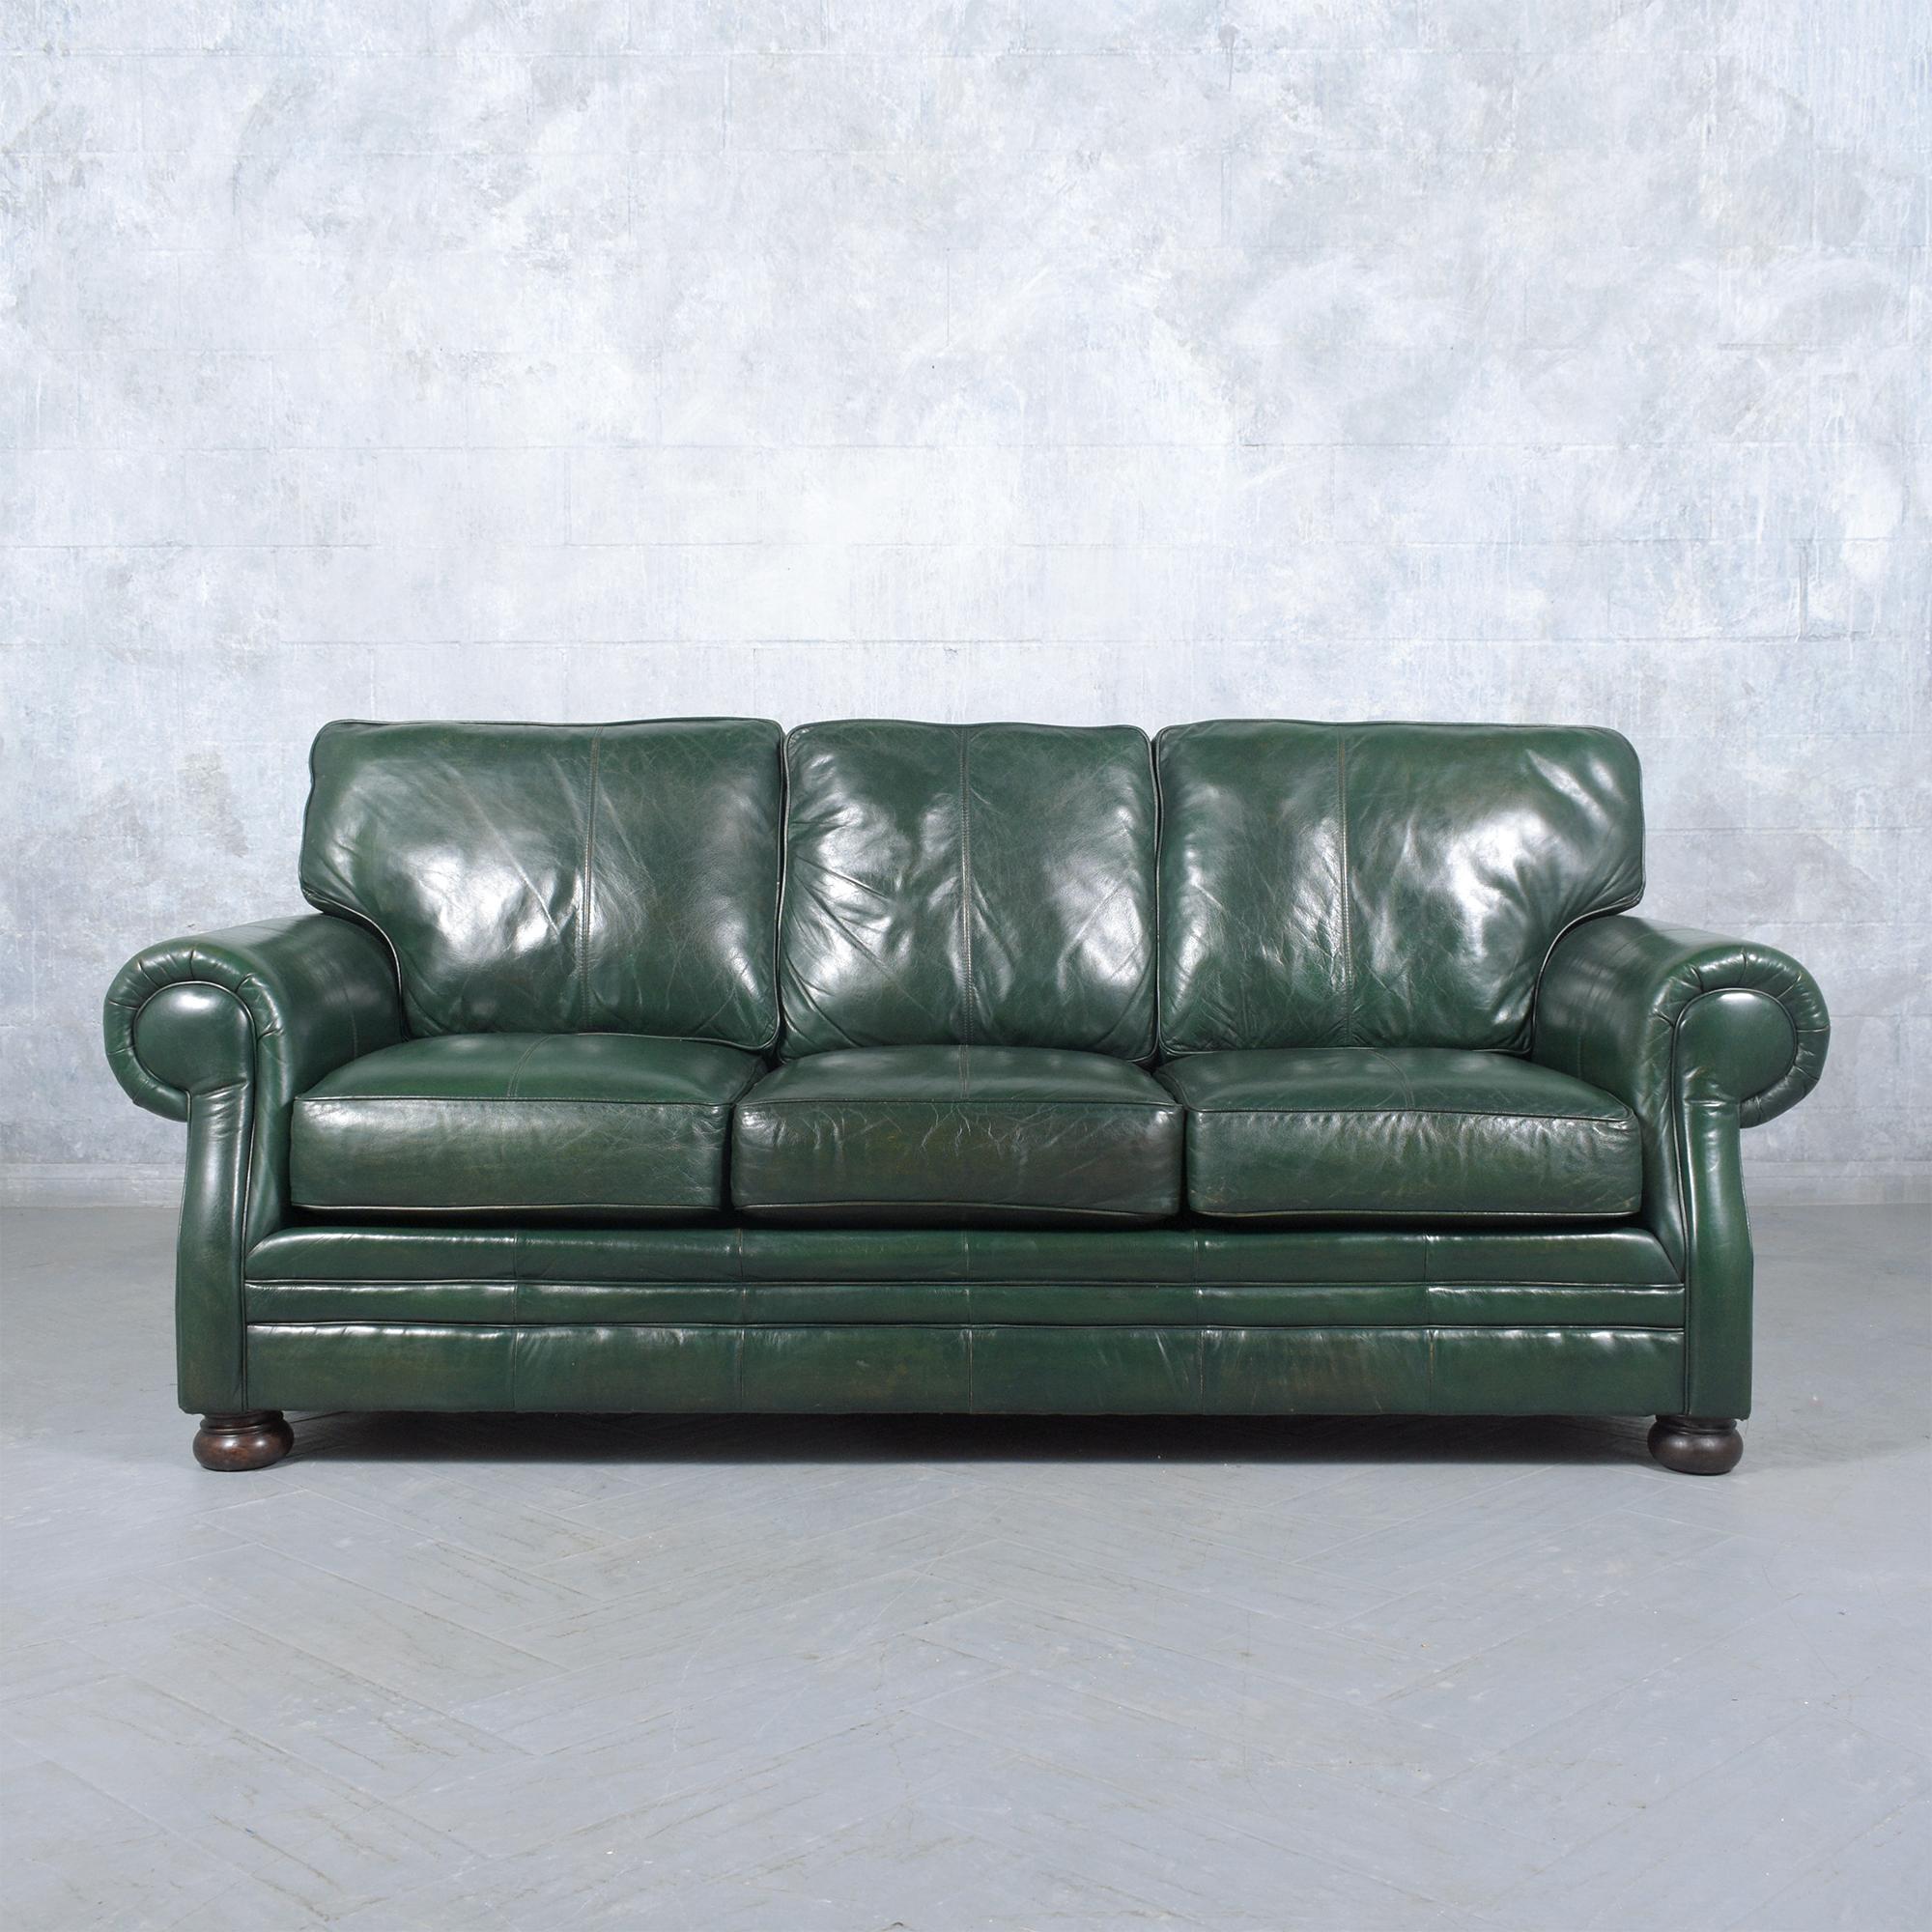 Lassen Sie sich mit diesem außergewöhnlichen Vintage-Sofa in die 1980er Jahre zurückversetzen. Es ist wunderschön aus Leder gefertigt und wurde von unserem Team professioneller Handwerker sorgfältig restauriert. Dieses Sofa hat eine glatte,